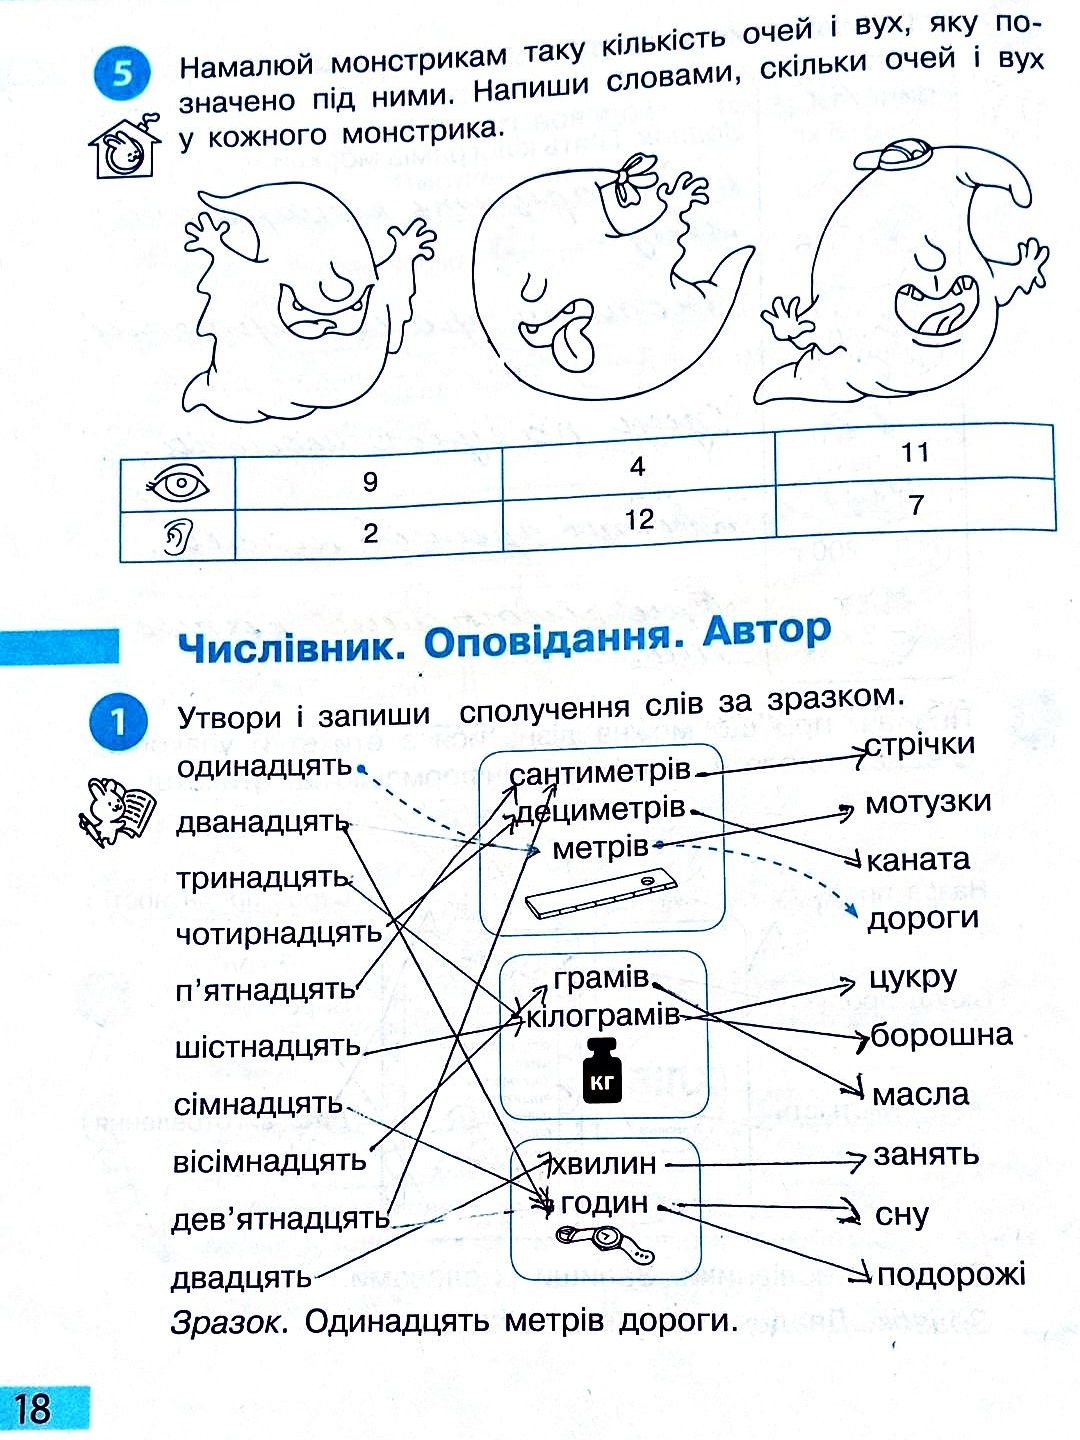 Сторінка 18 частина 2 гдз 3 клас робочий зошит українська мова Большакова